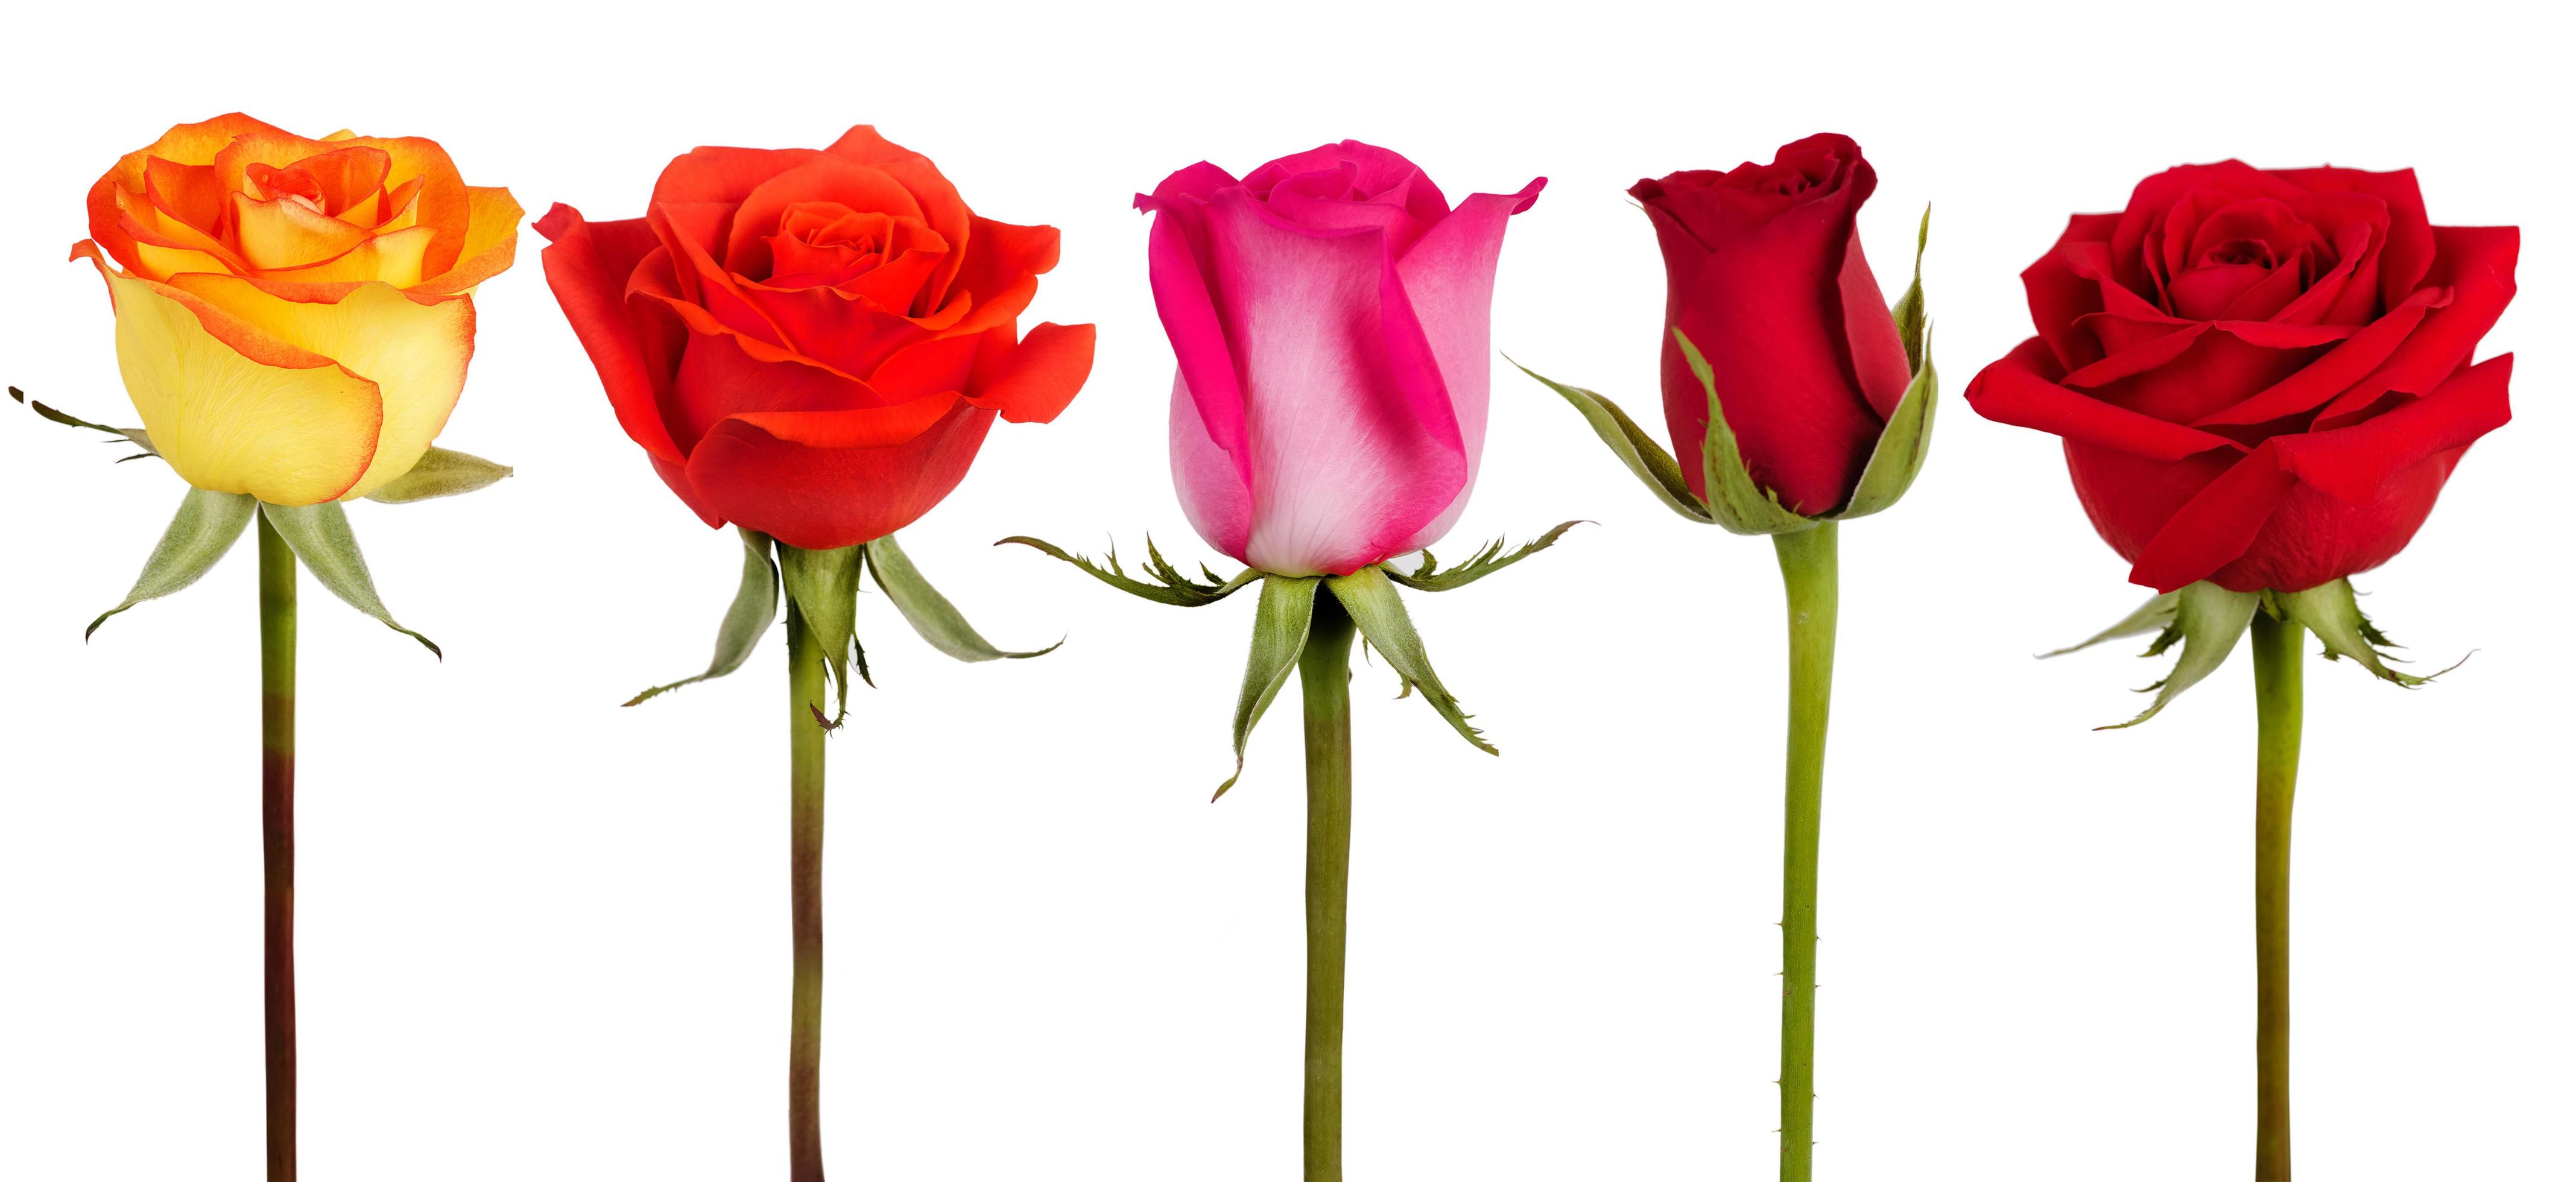 Trappenhuis teer bijgeloof vijf rozen van verschillende kleuren 3512738 stockfoto bij Vecteezy